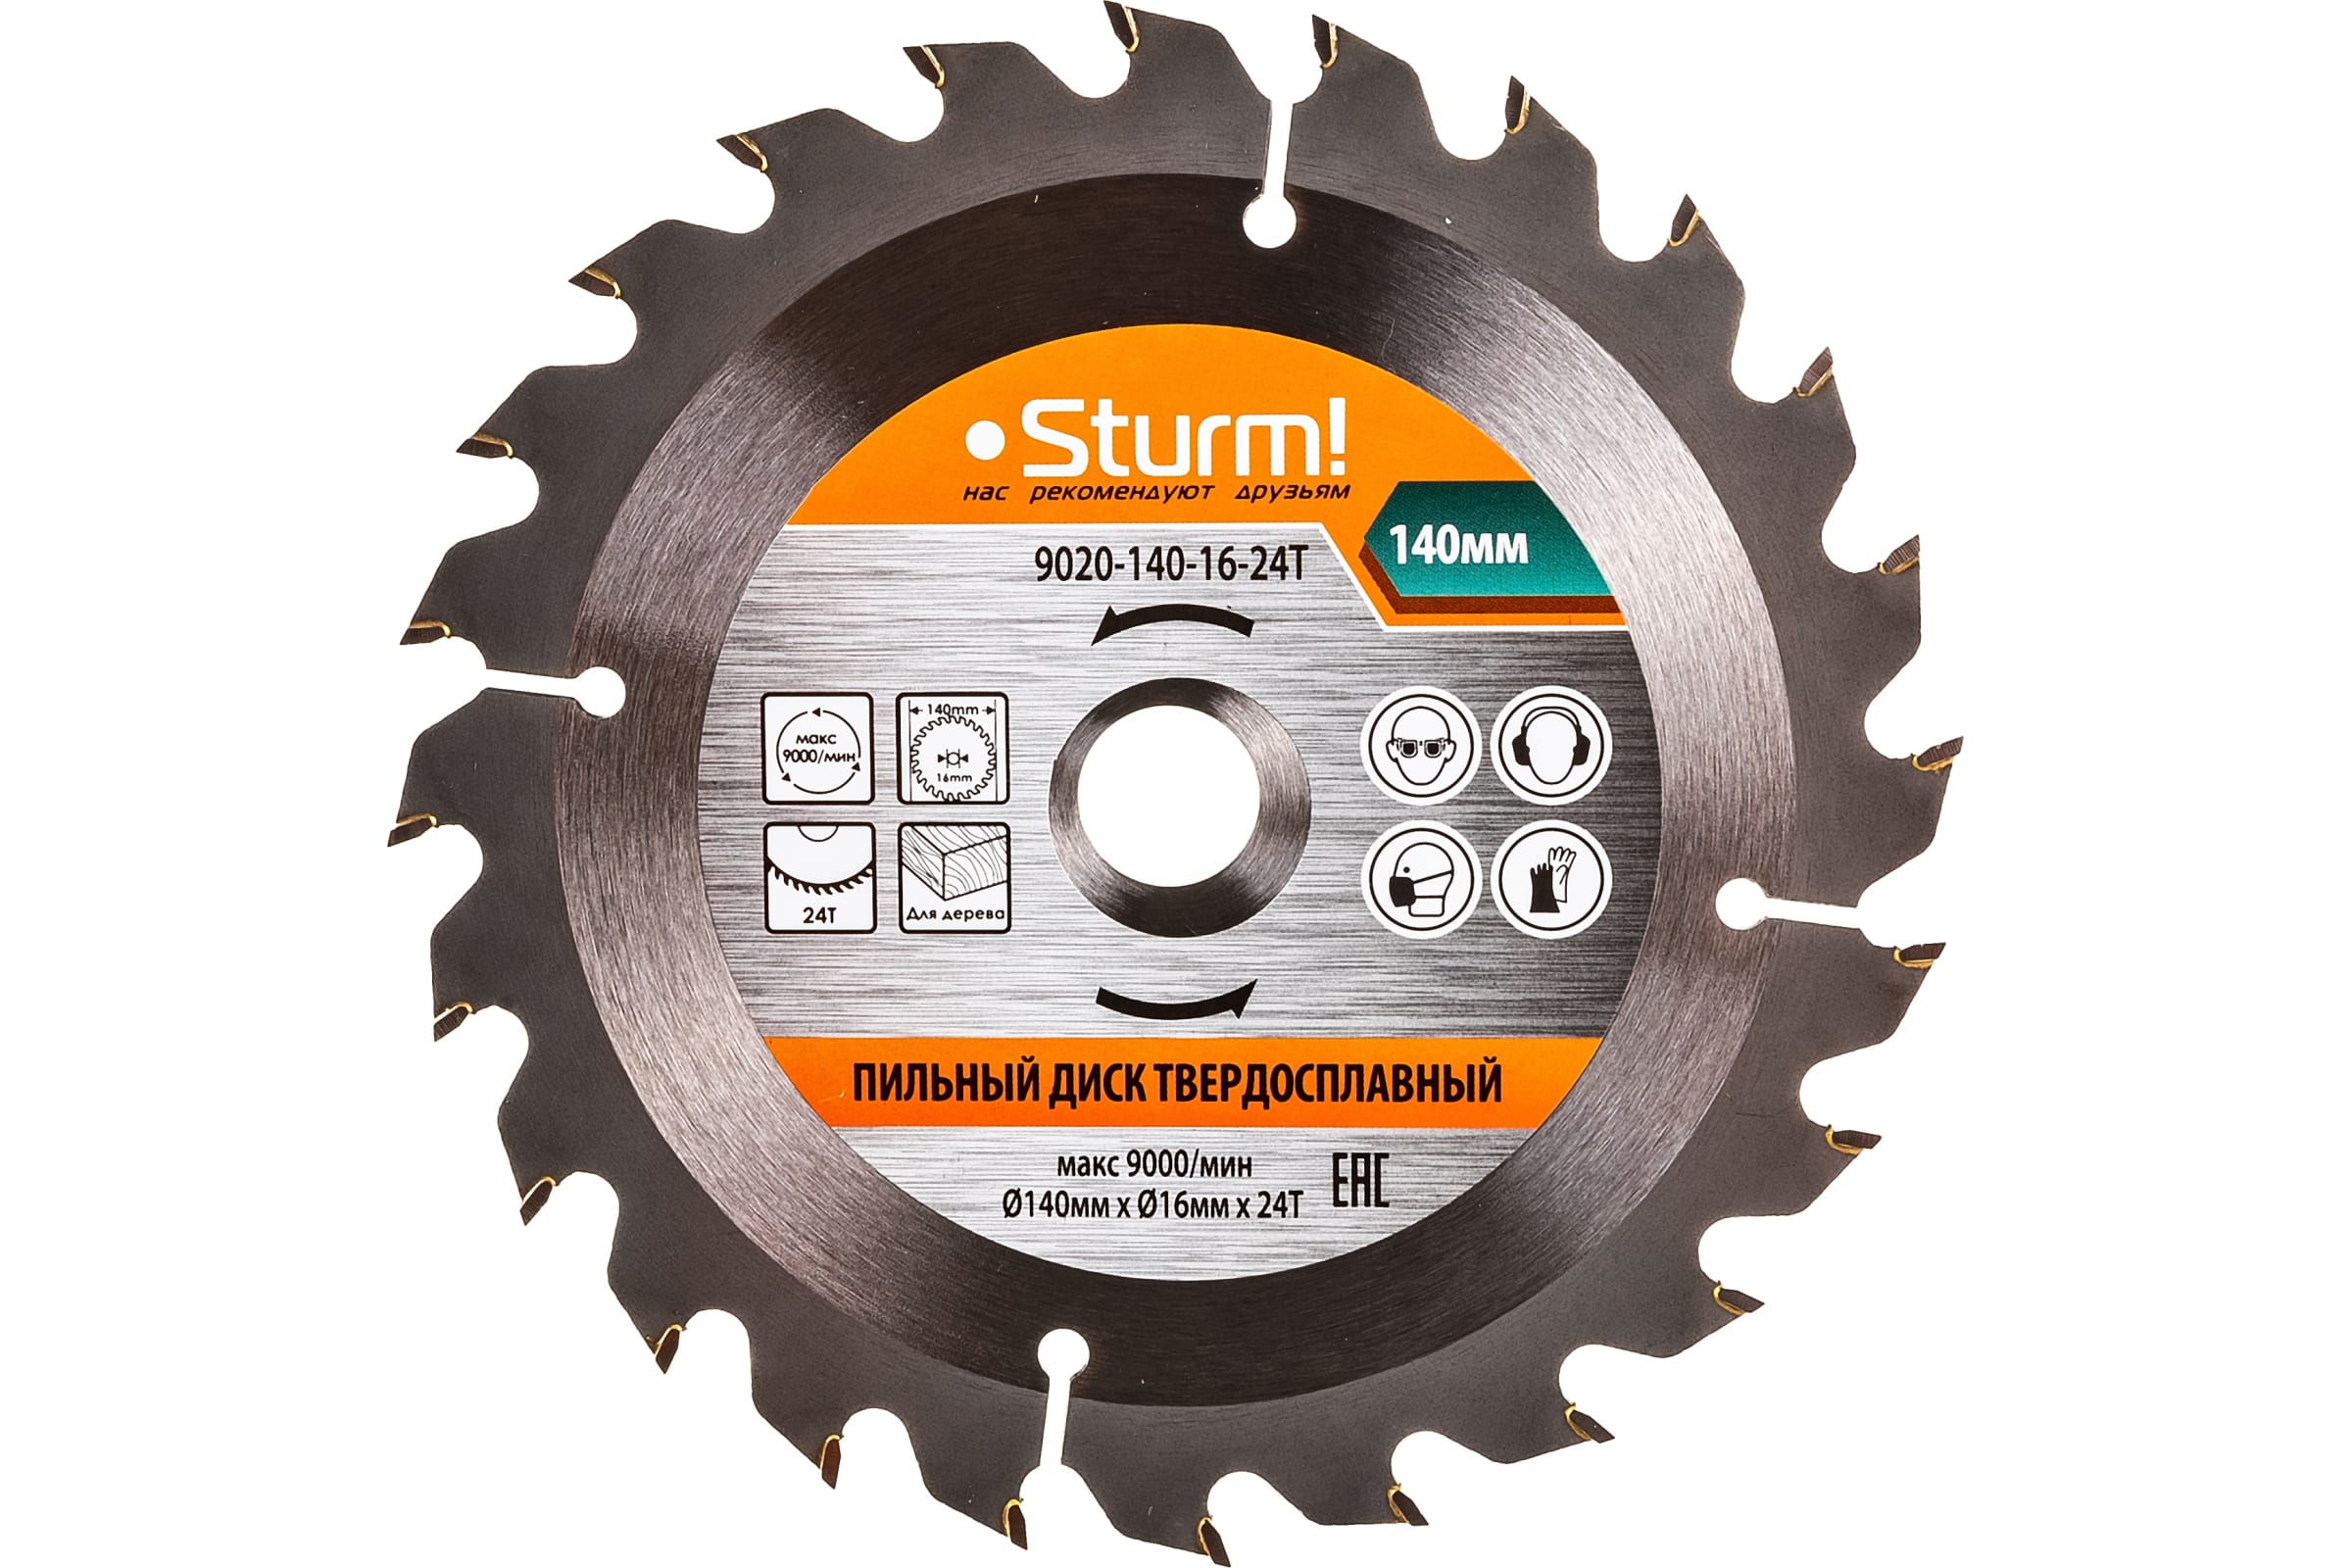 Sturm 9020-140-16-24T Пильный диск